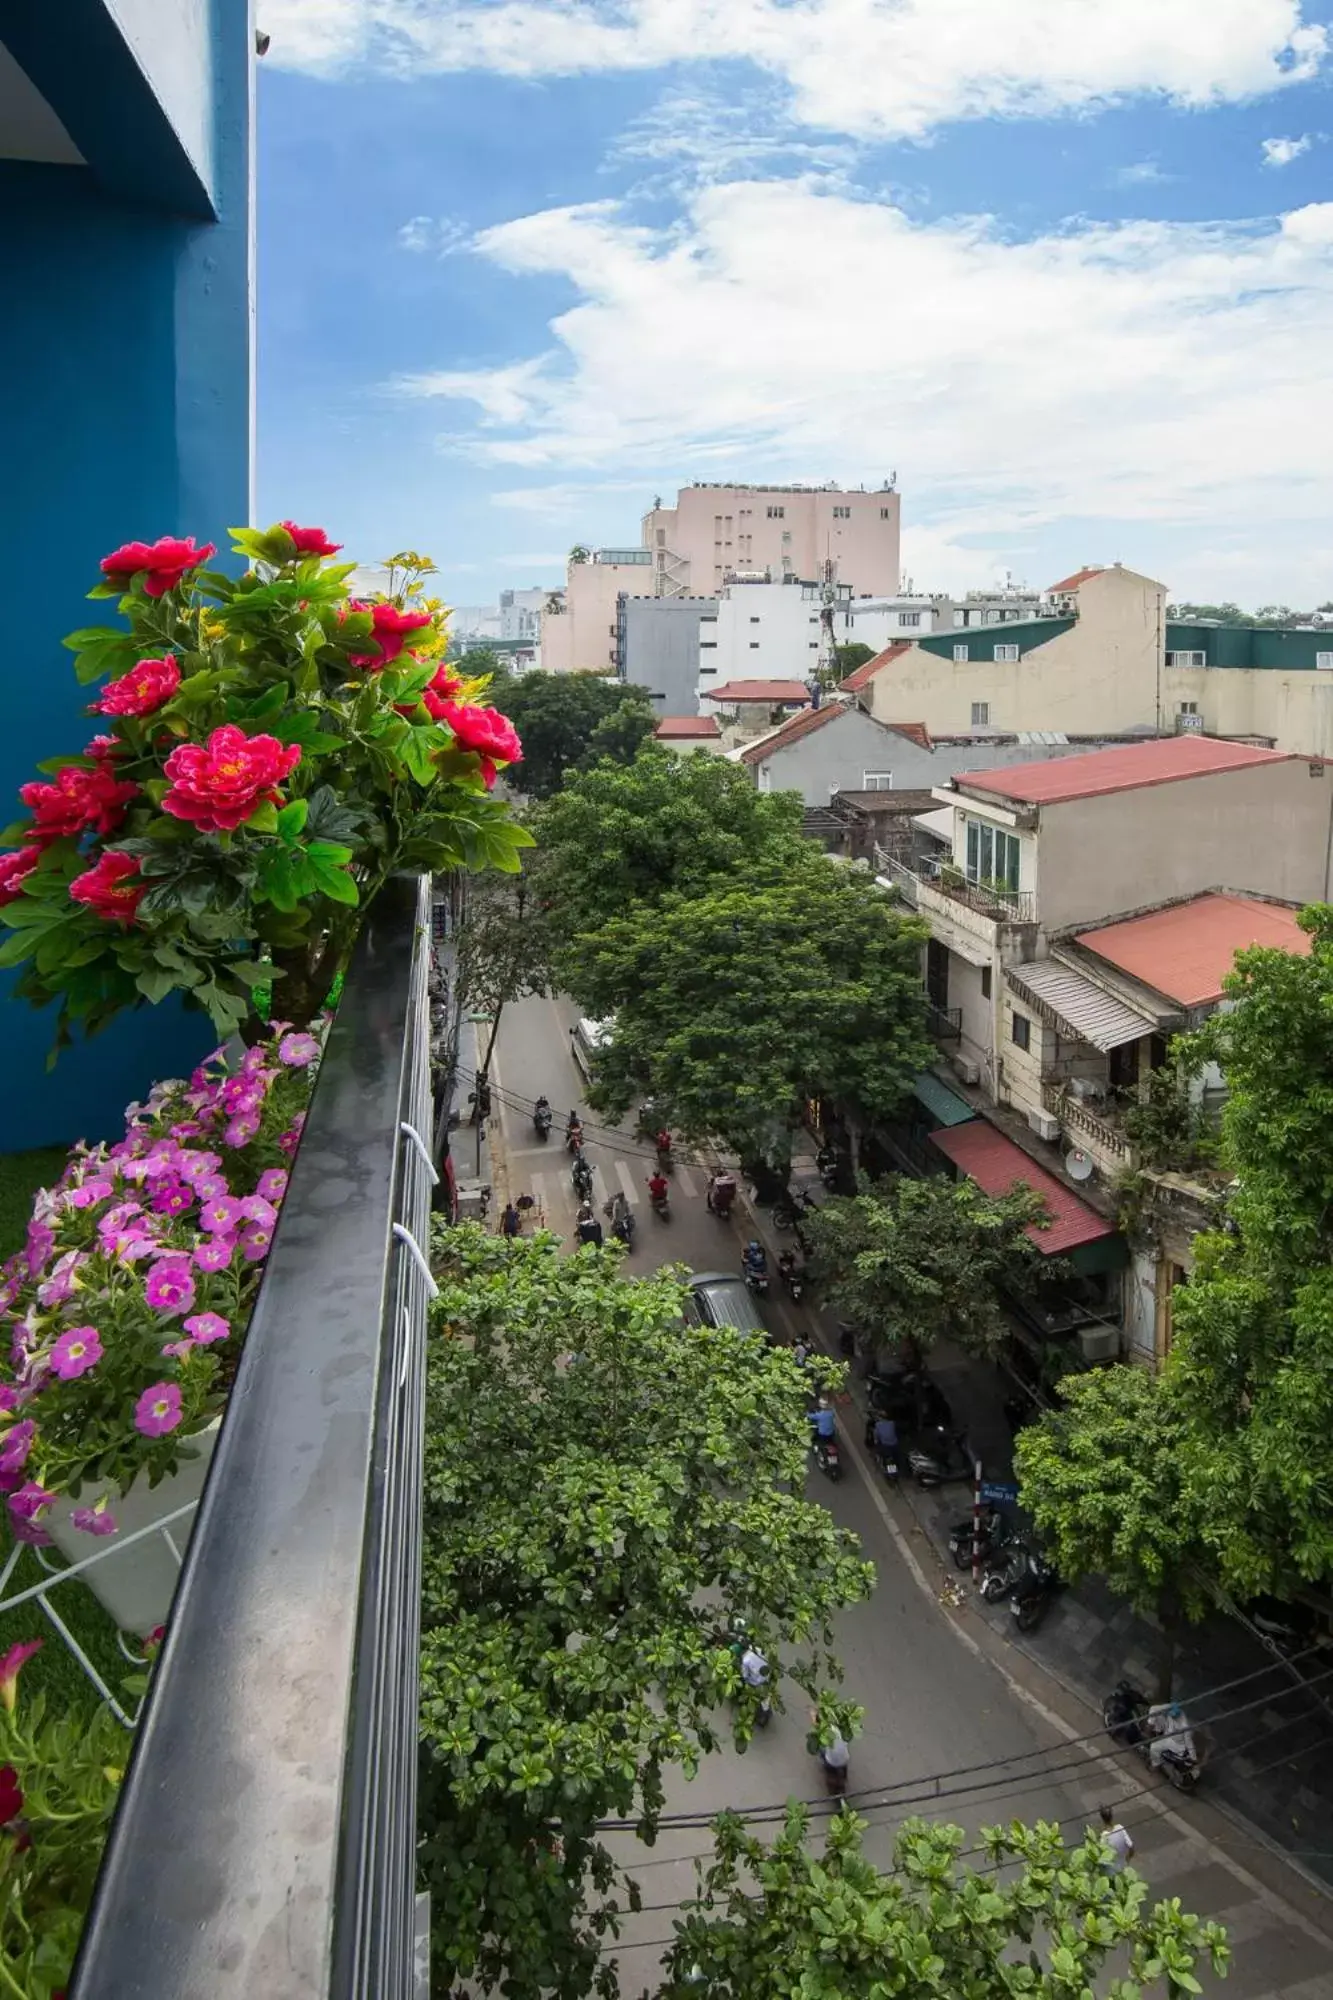 Balcony/Terrace in Hanoi Royal Palace Hotel 2